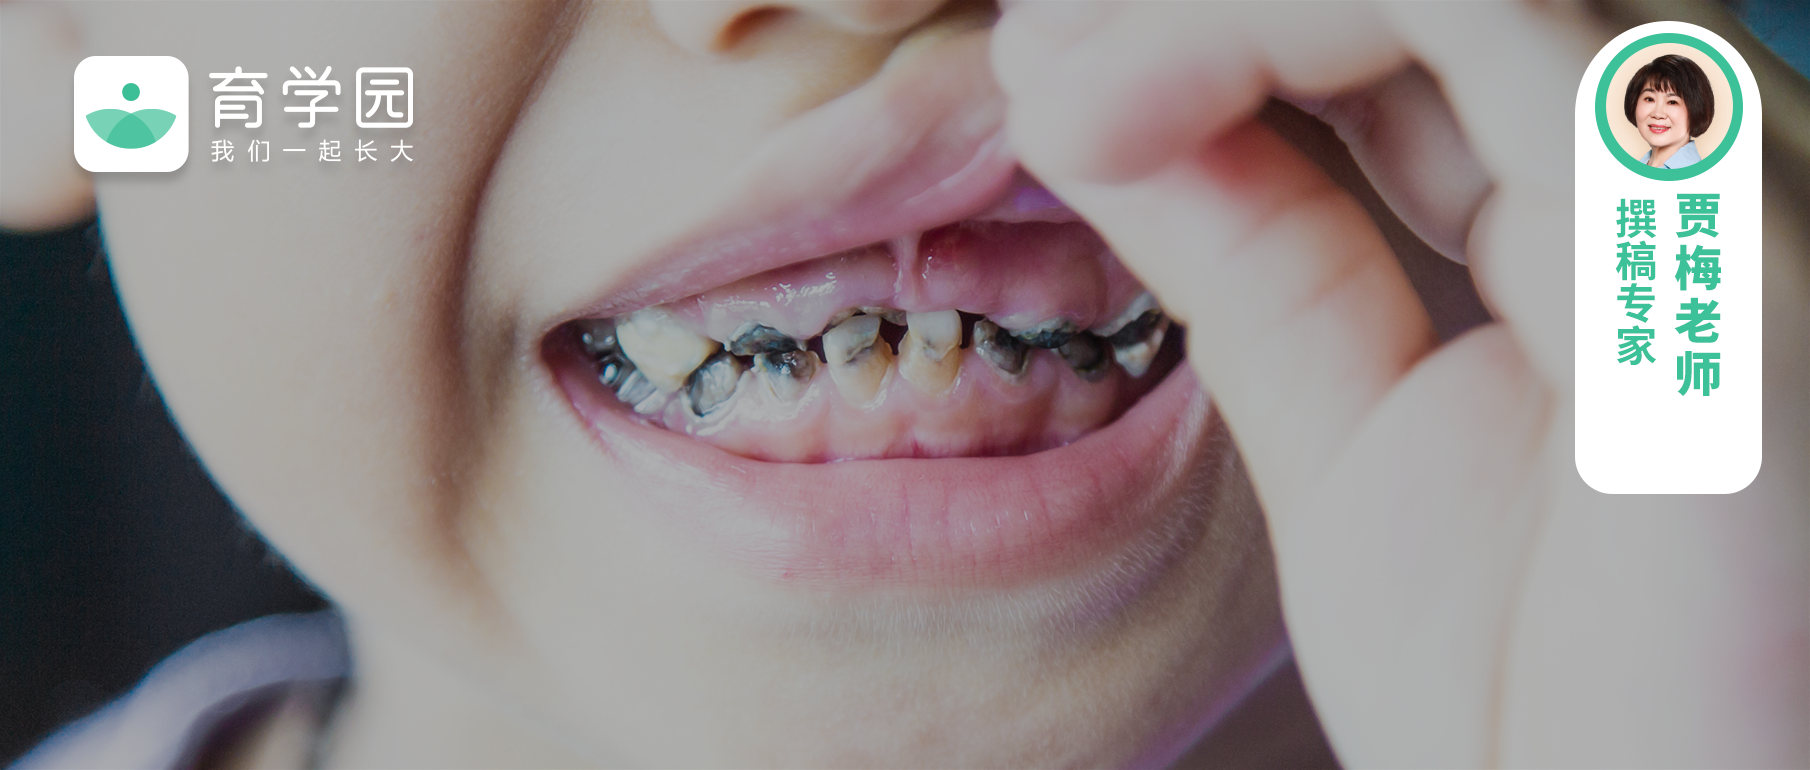 学前儿童为什么容易产生龋齿